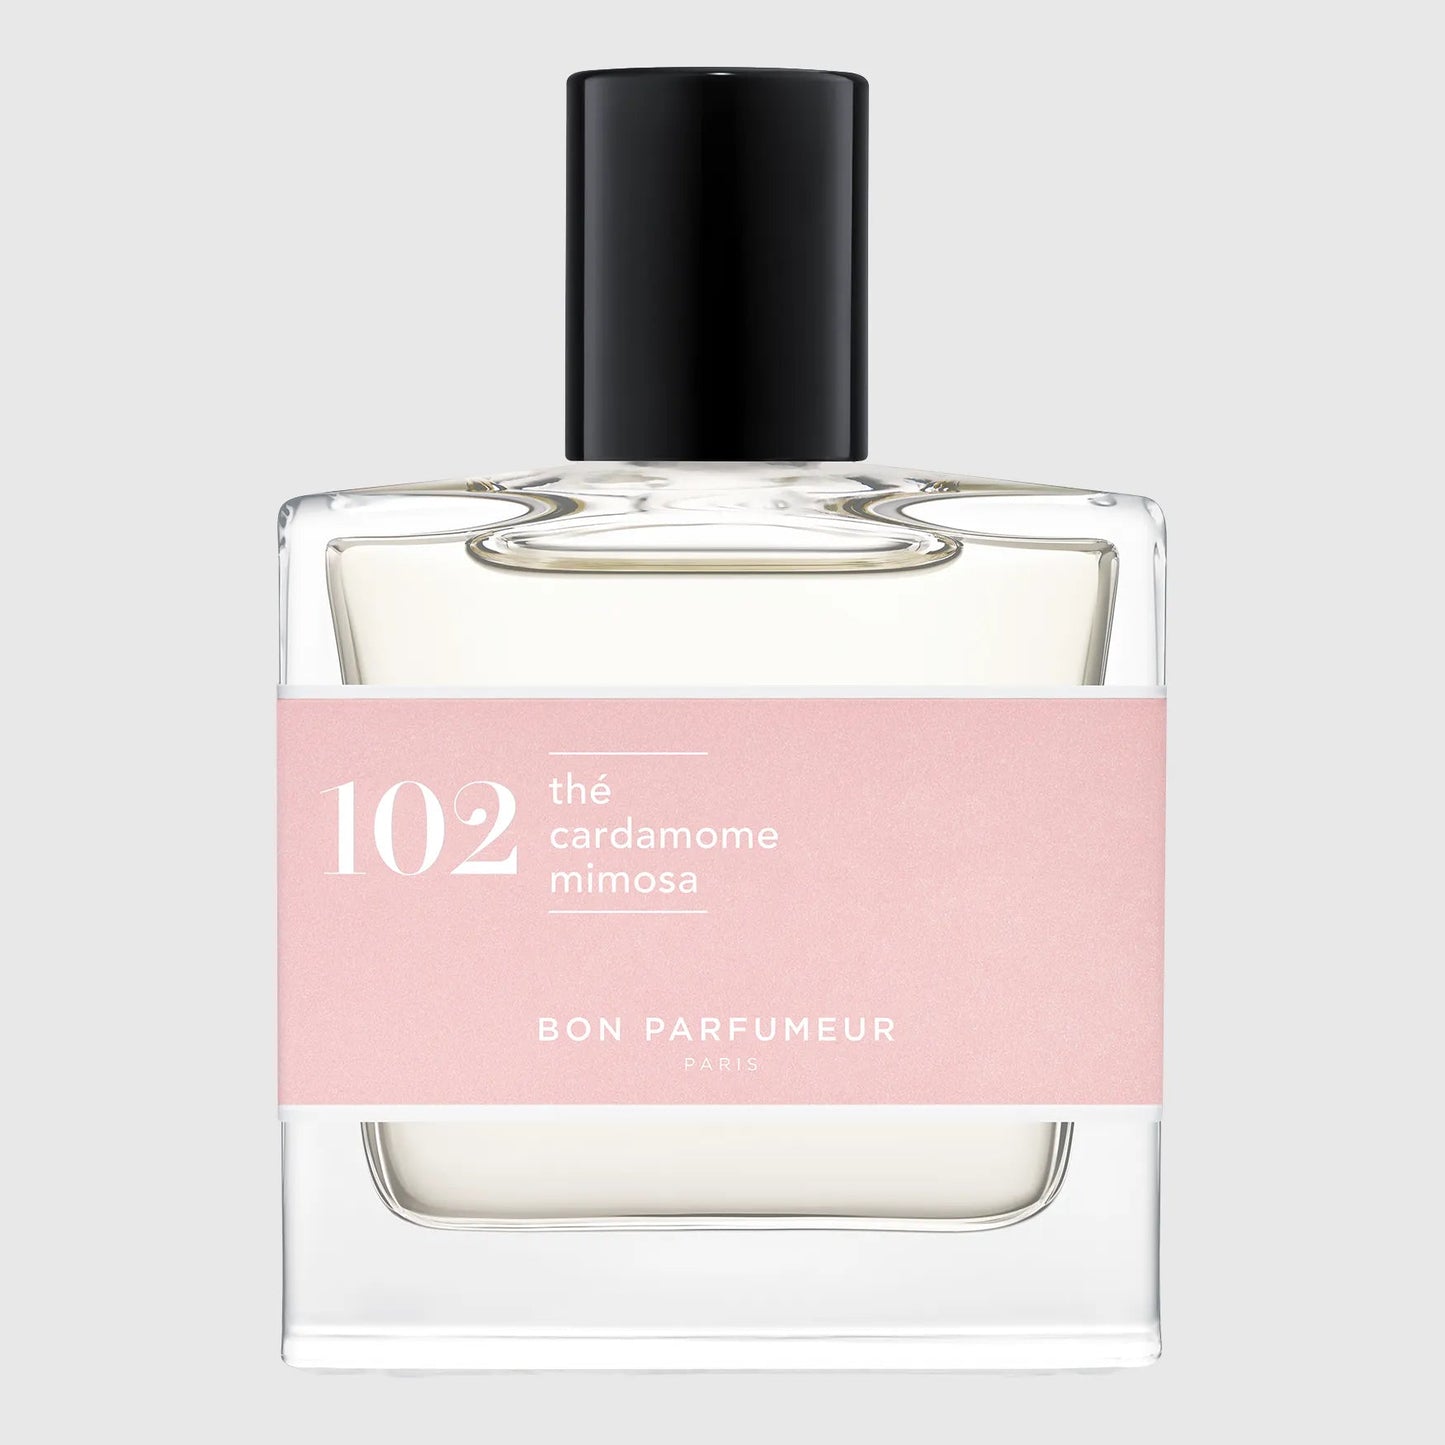 Bon Parfumeur Eau de Parfum 102 Fragrance Bon Parfumeur 